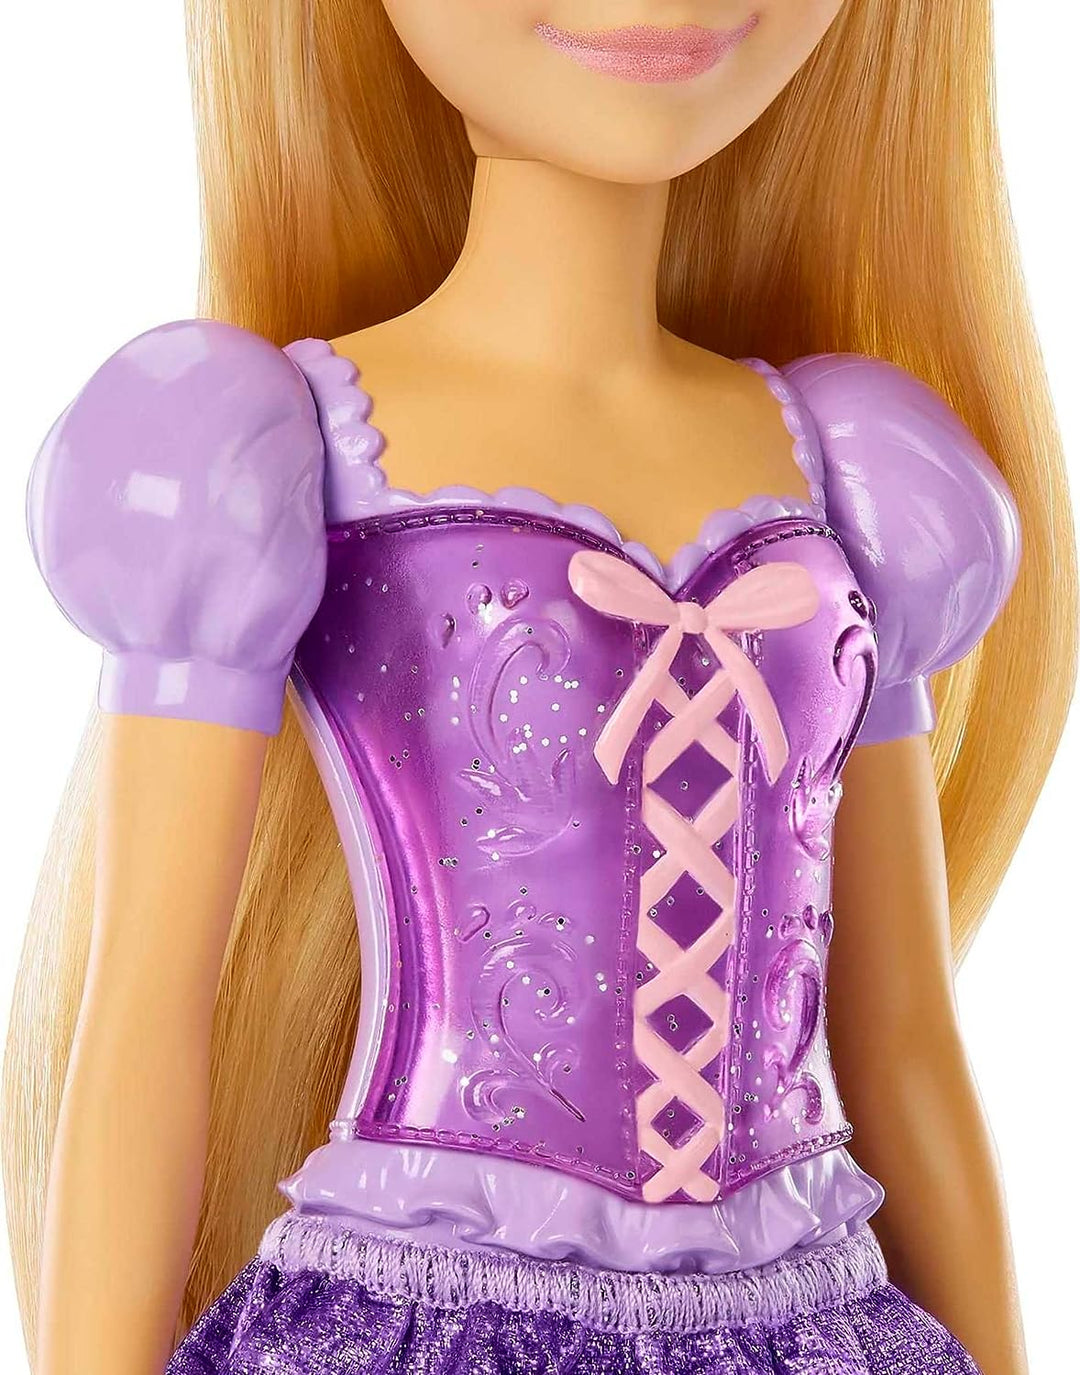 ?Disney Princess Toys, bewegliche Modepuppe Rapunzel mit glitzernder Kleidung und